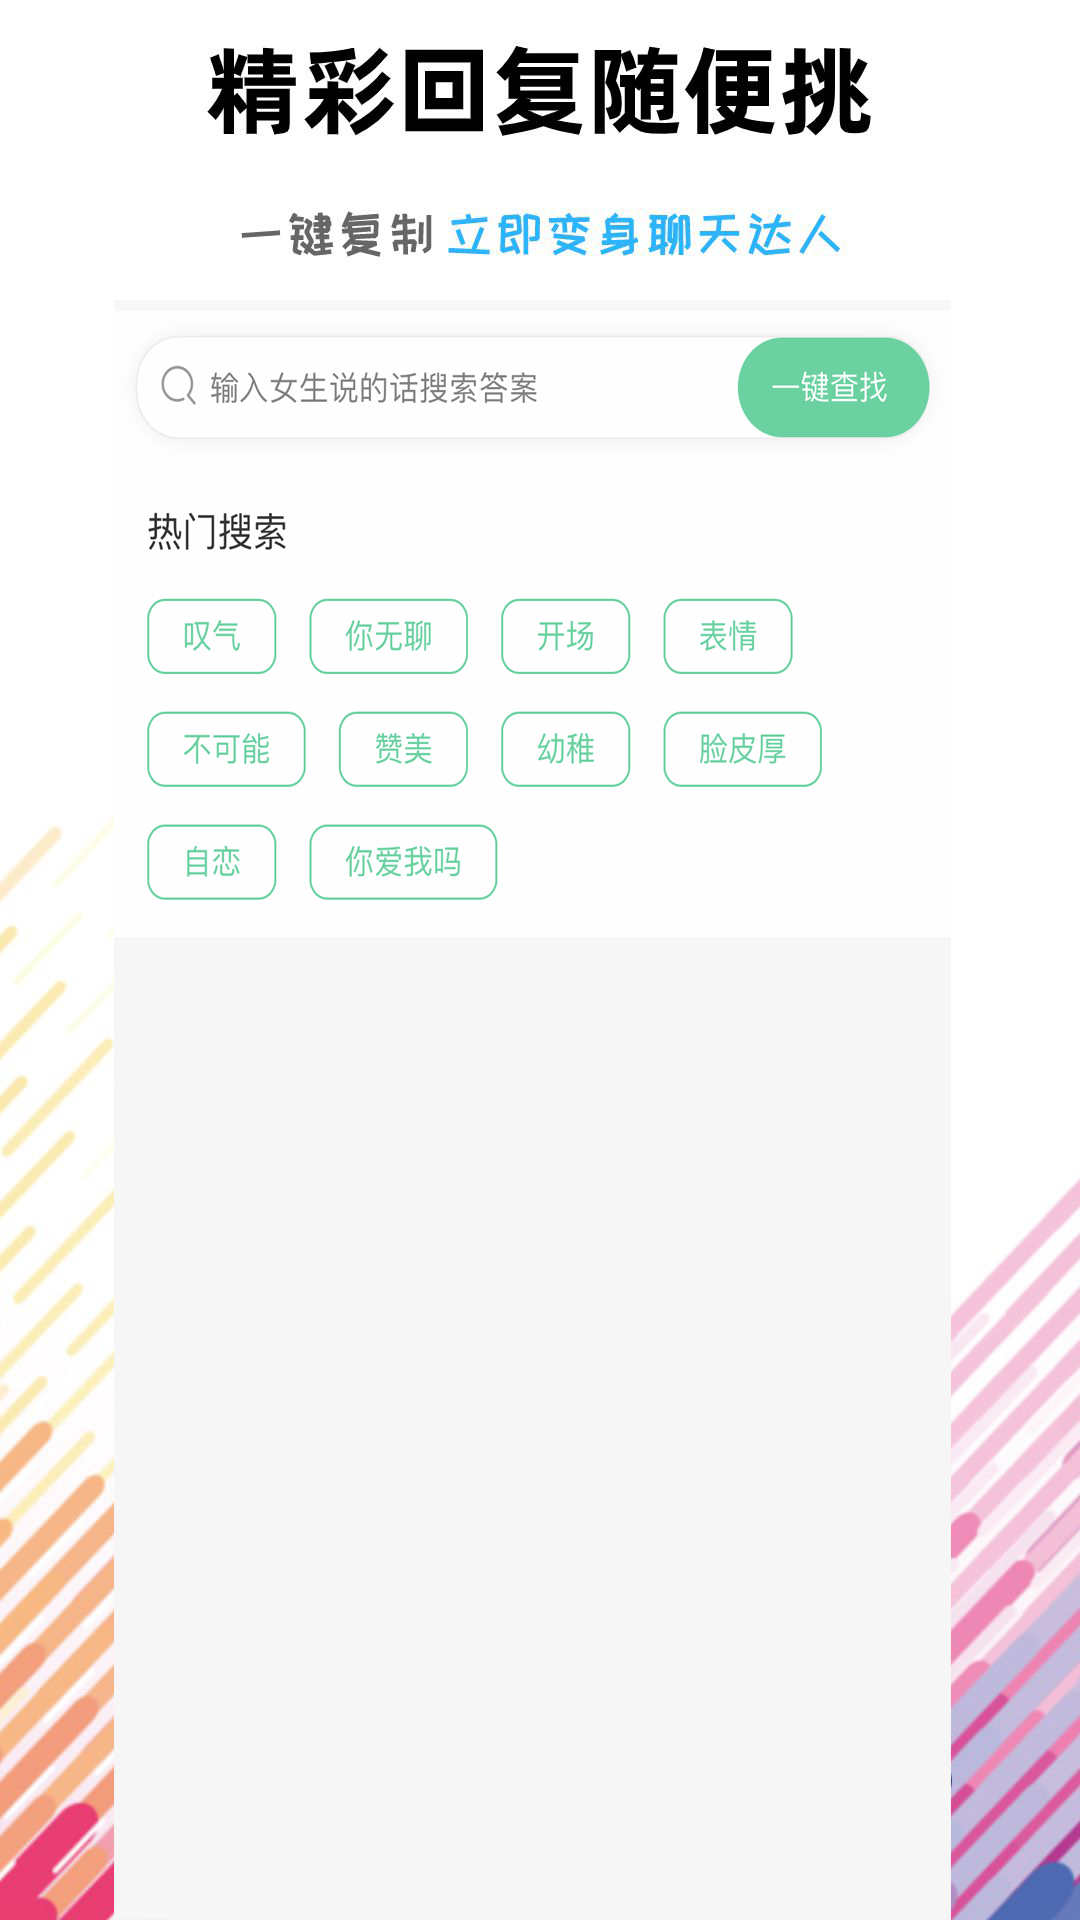 恋爱话术语术库appv1.2.0